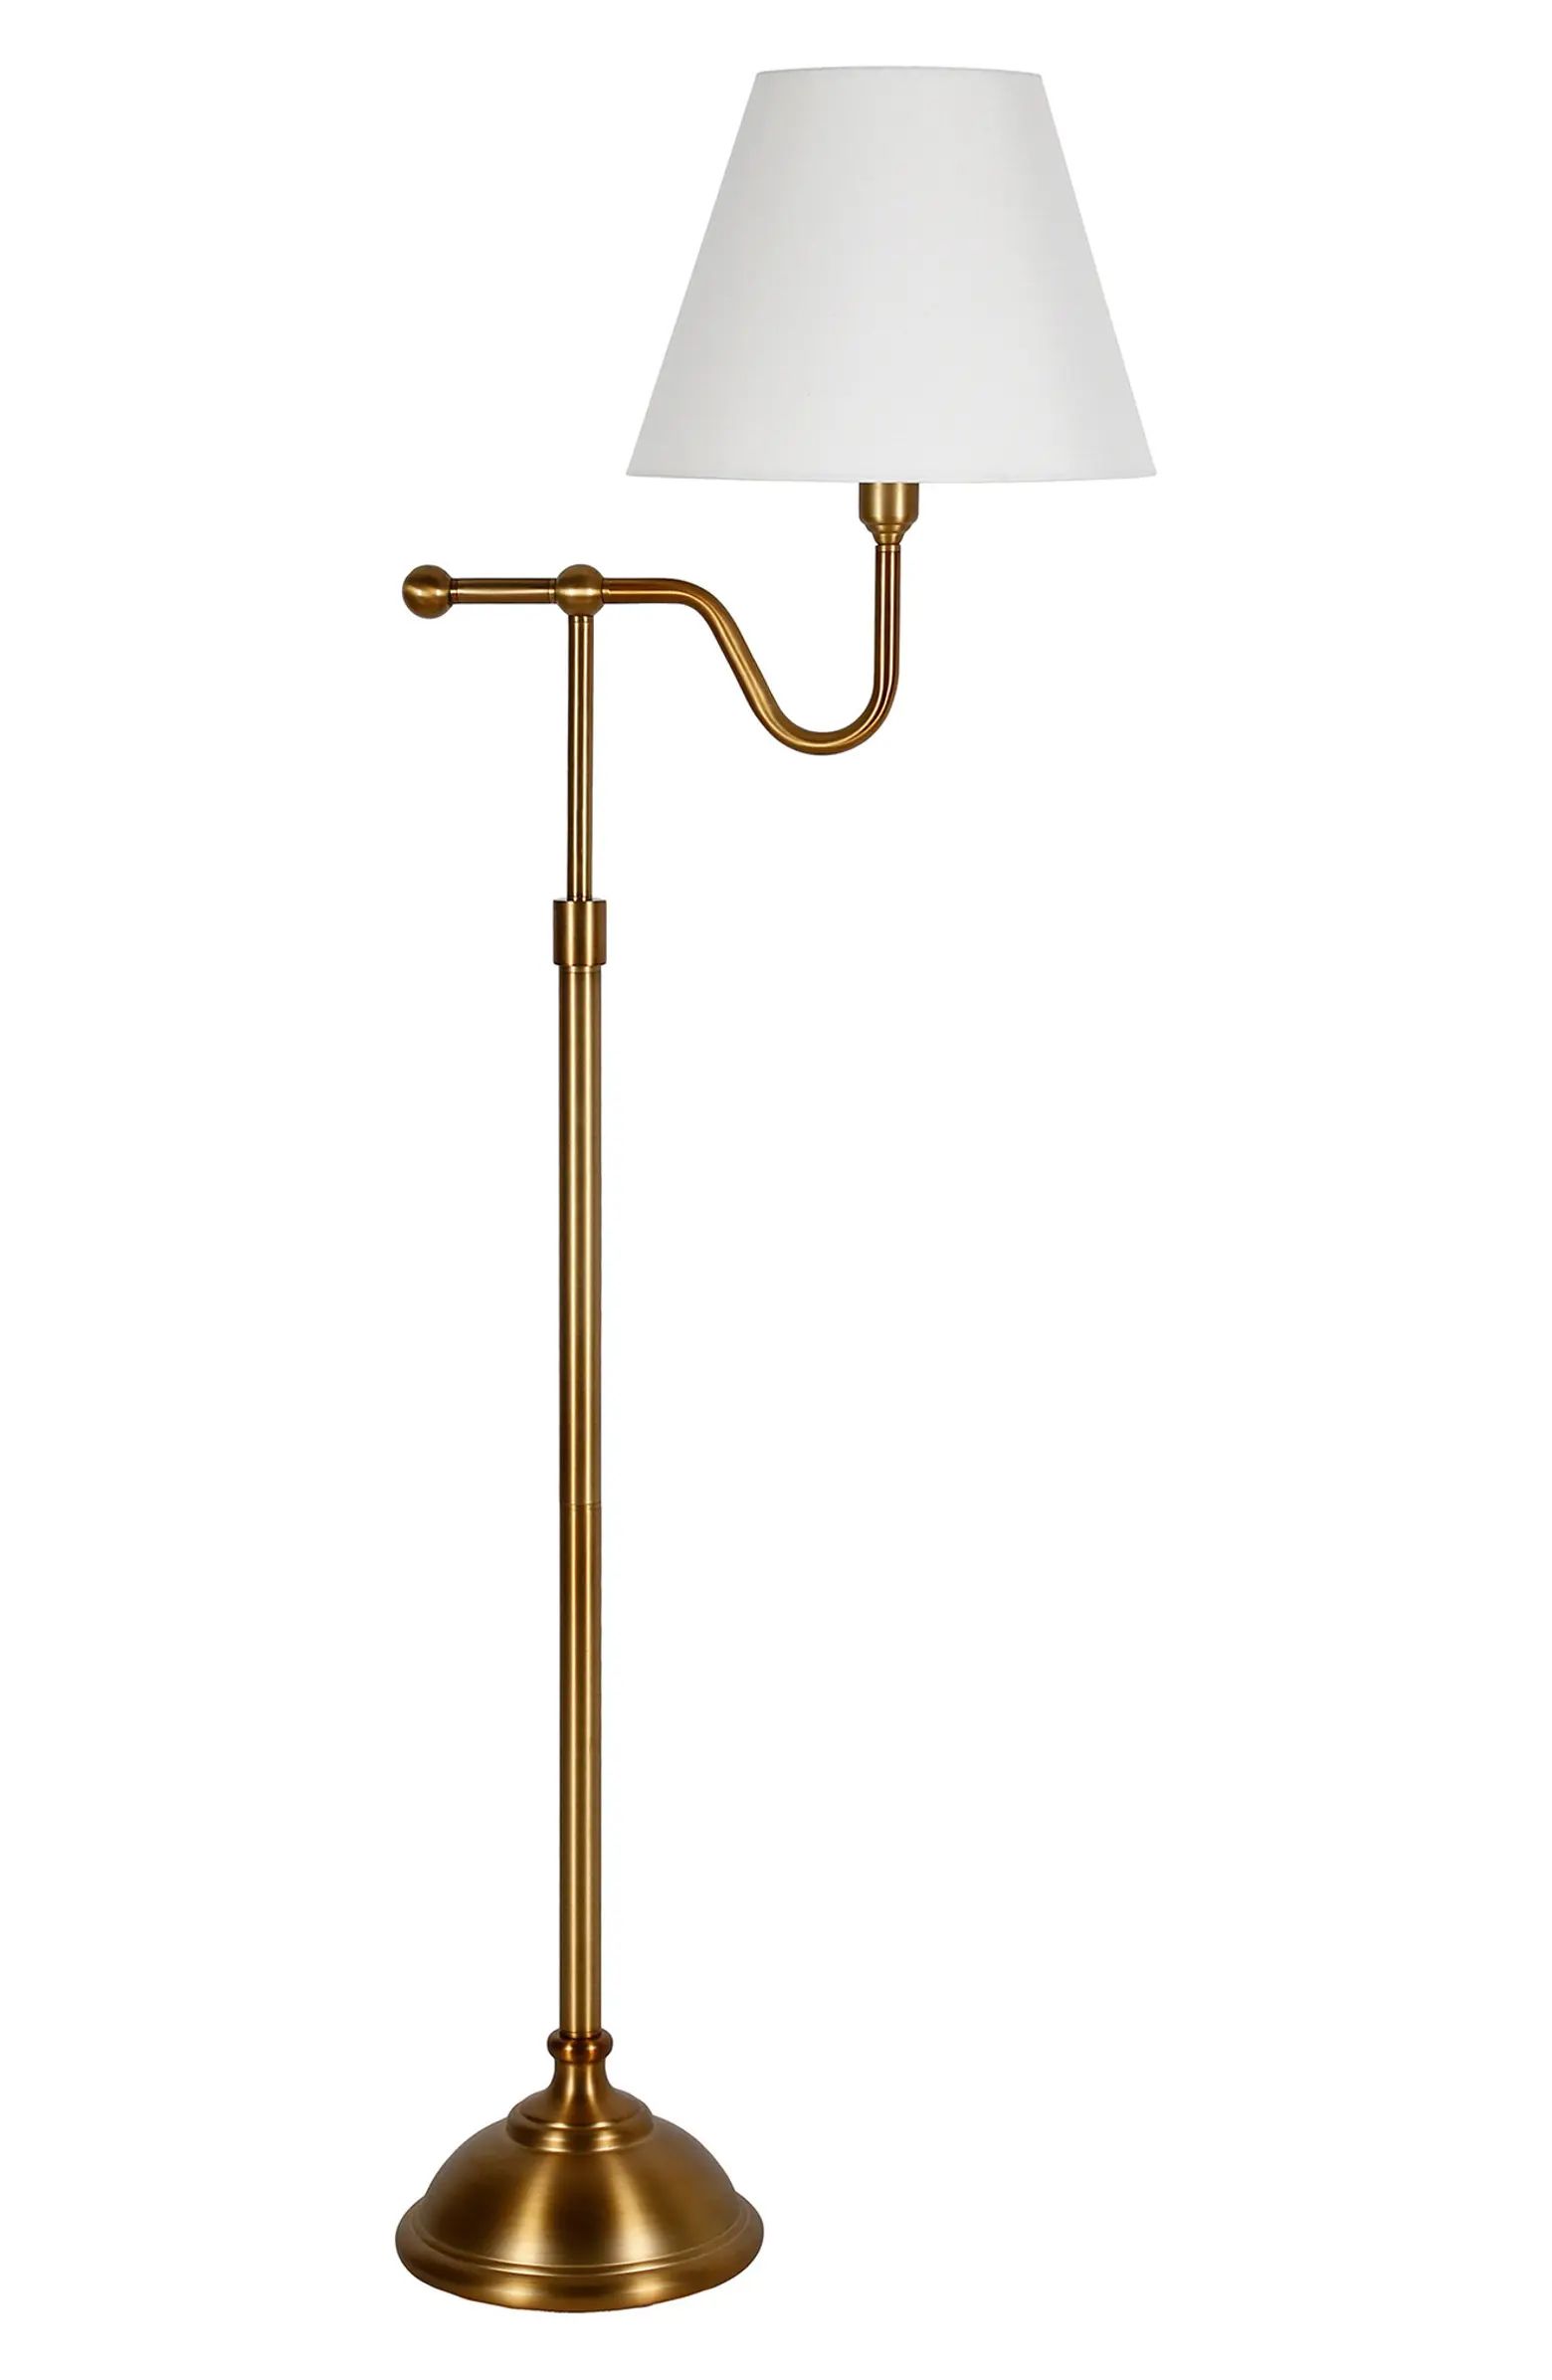 Wellesley Brass Floor Lamp with Empire Shade | Nordstrom Rack